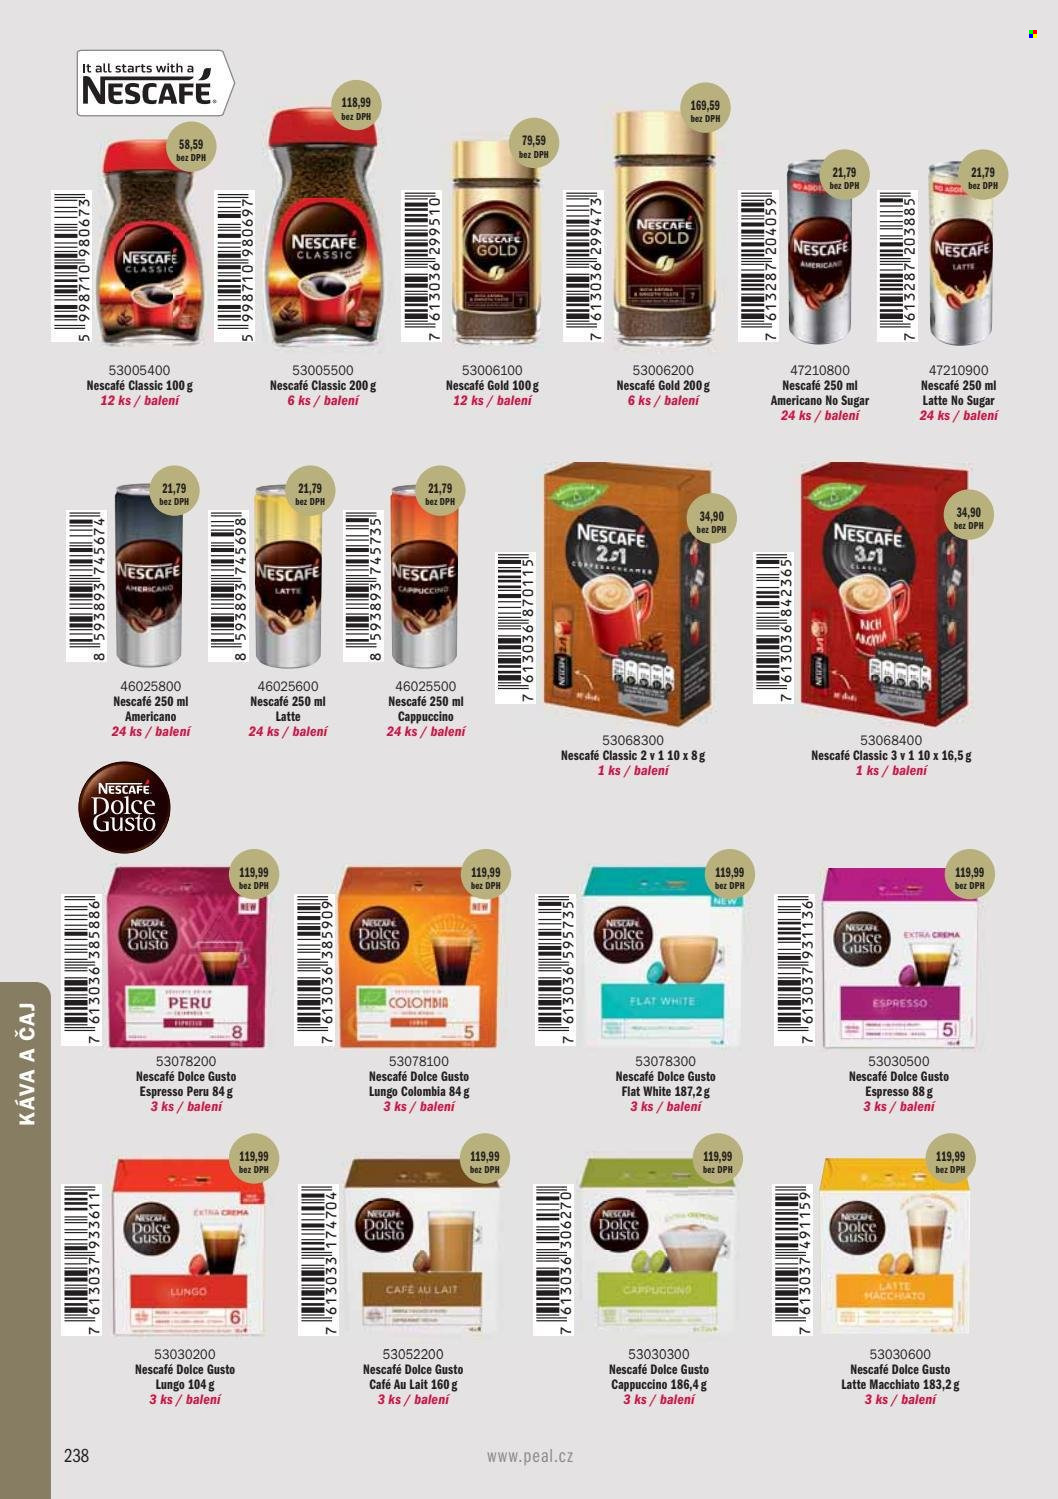 Leták PEAL - Produkty v akci - Dolce Gusto, Espresso, Nescafé, instantní káva, cappuccino, Nescafé Gold, Latte Macchiato, Latte, čaj. Strana 240.